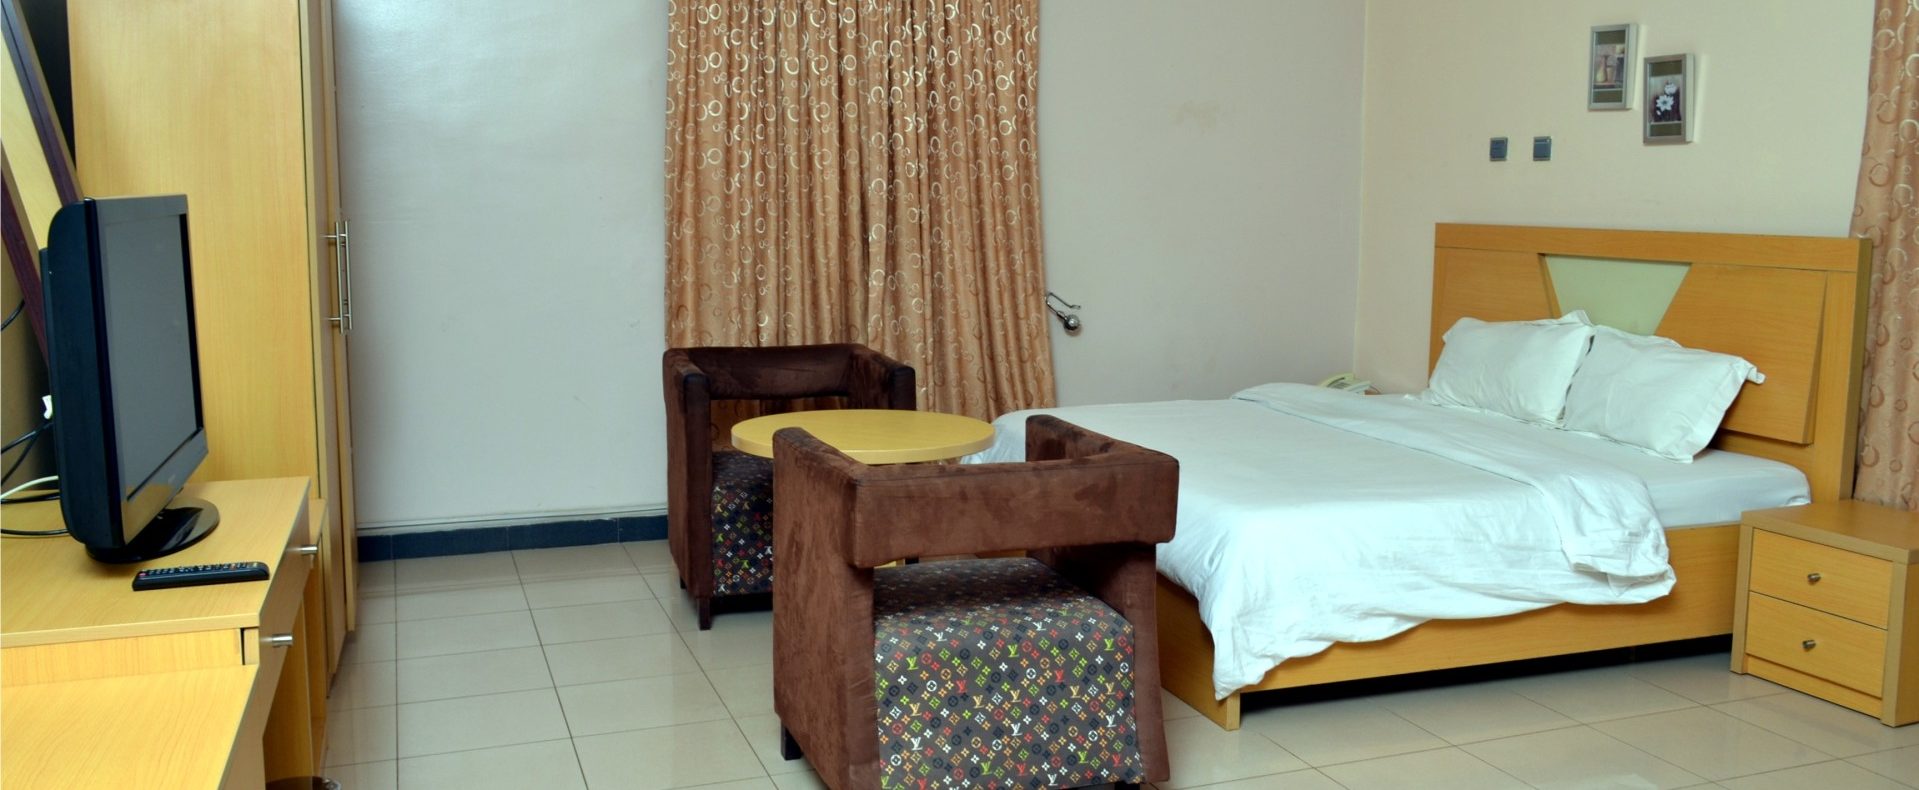 Hotel Bondi Room In Abuja Nigeria